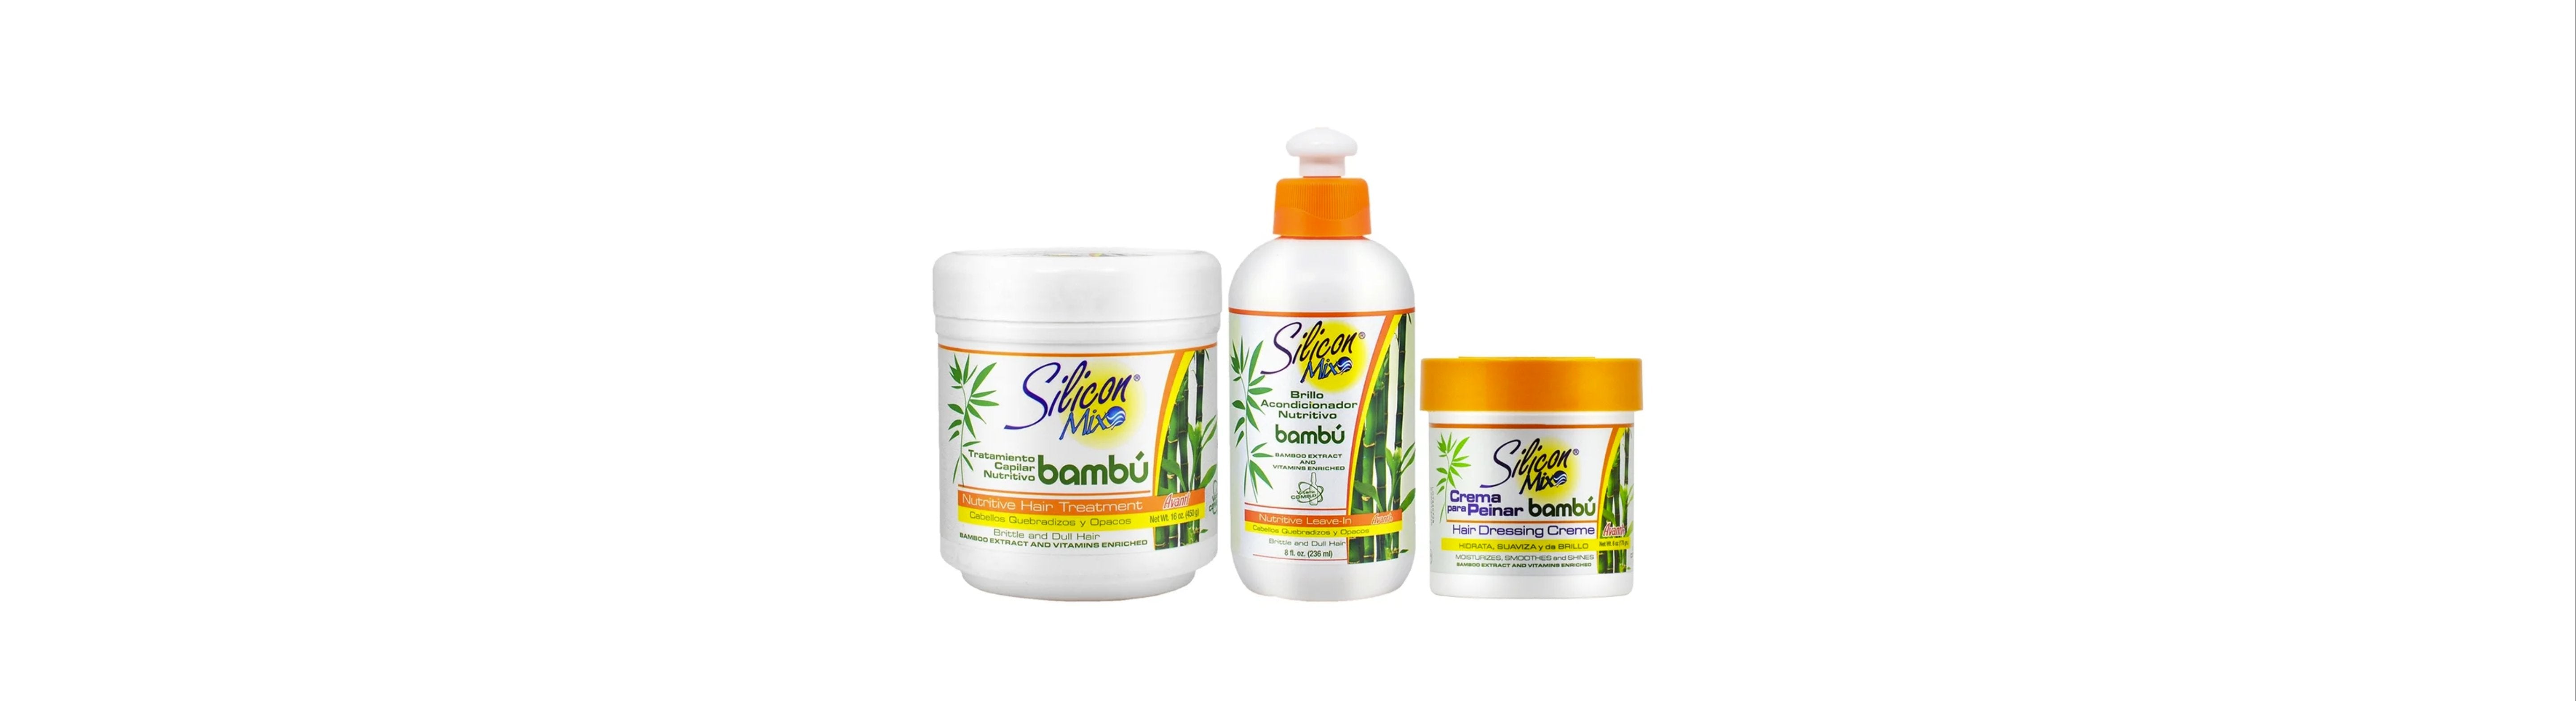 Silicon Mix Bambu Nutritive Hair Treatment 16 oz / 450 g for Brittle & Dull  Hair